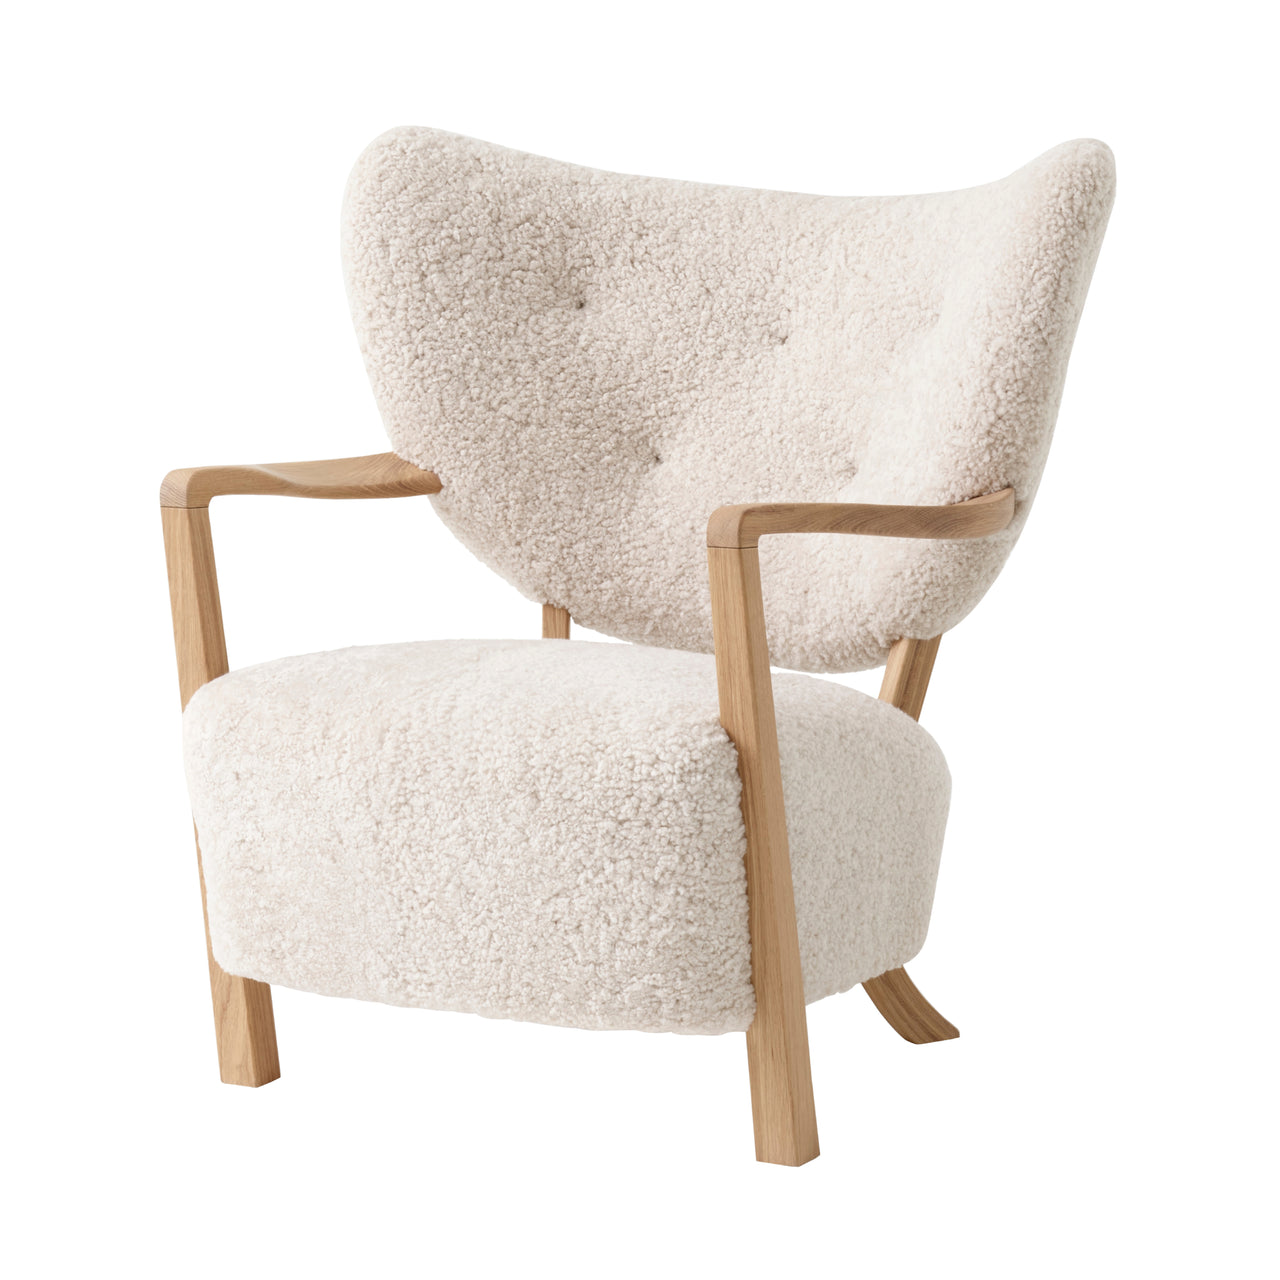 Wulff Lounge Chair ATD2: Oak + Sheepskin Moonlight